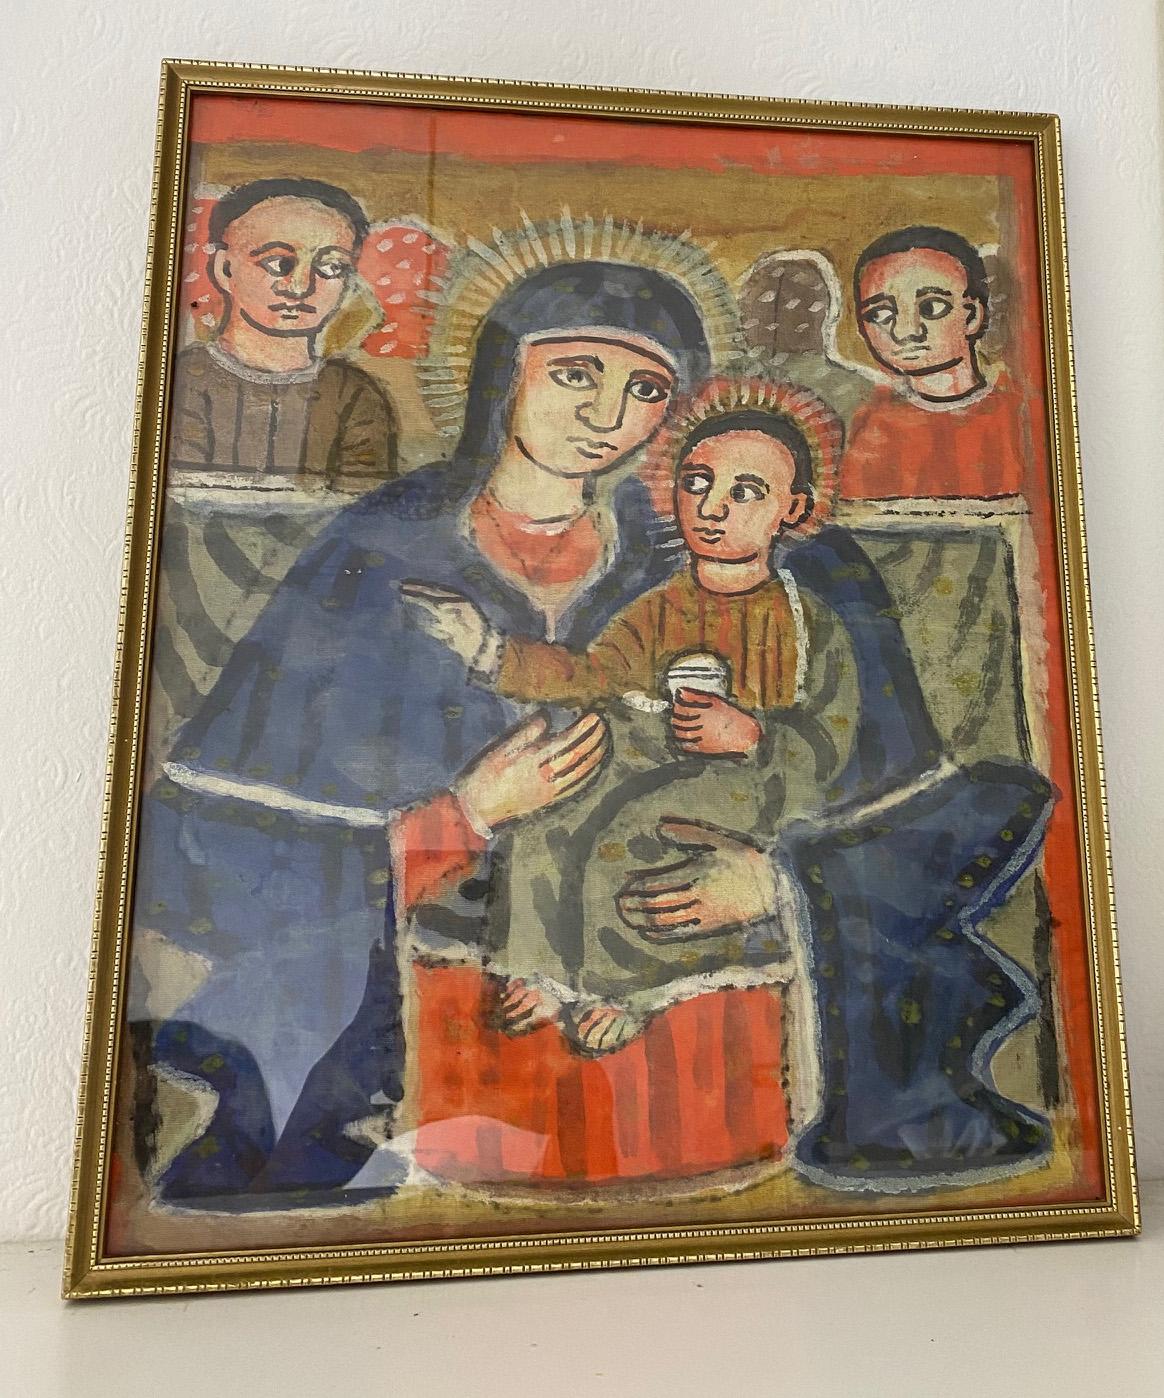 Ein charmantes äthiopisches Vintage-Gemälde der Madonna mit dem Jesuskind, flankiert von Engeln.
Die äthiopische Ikonographie der Jungfrau und des Kindes geht auf die byzantinische Ikonentradition zurück, die mindestens auf das sechste Jahrhundert